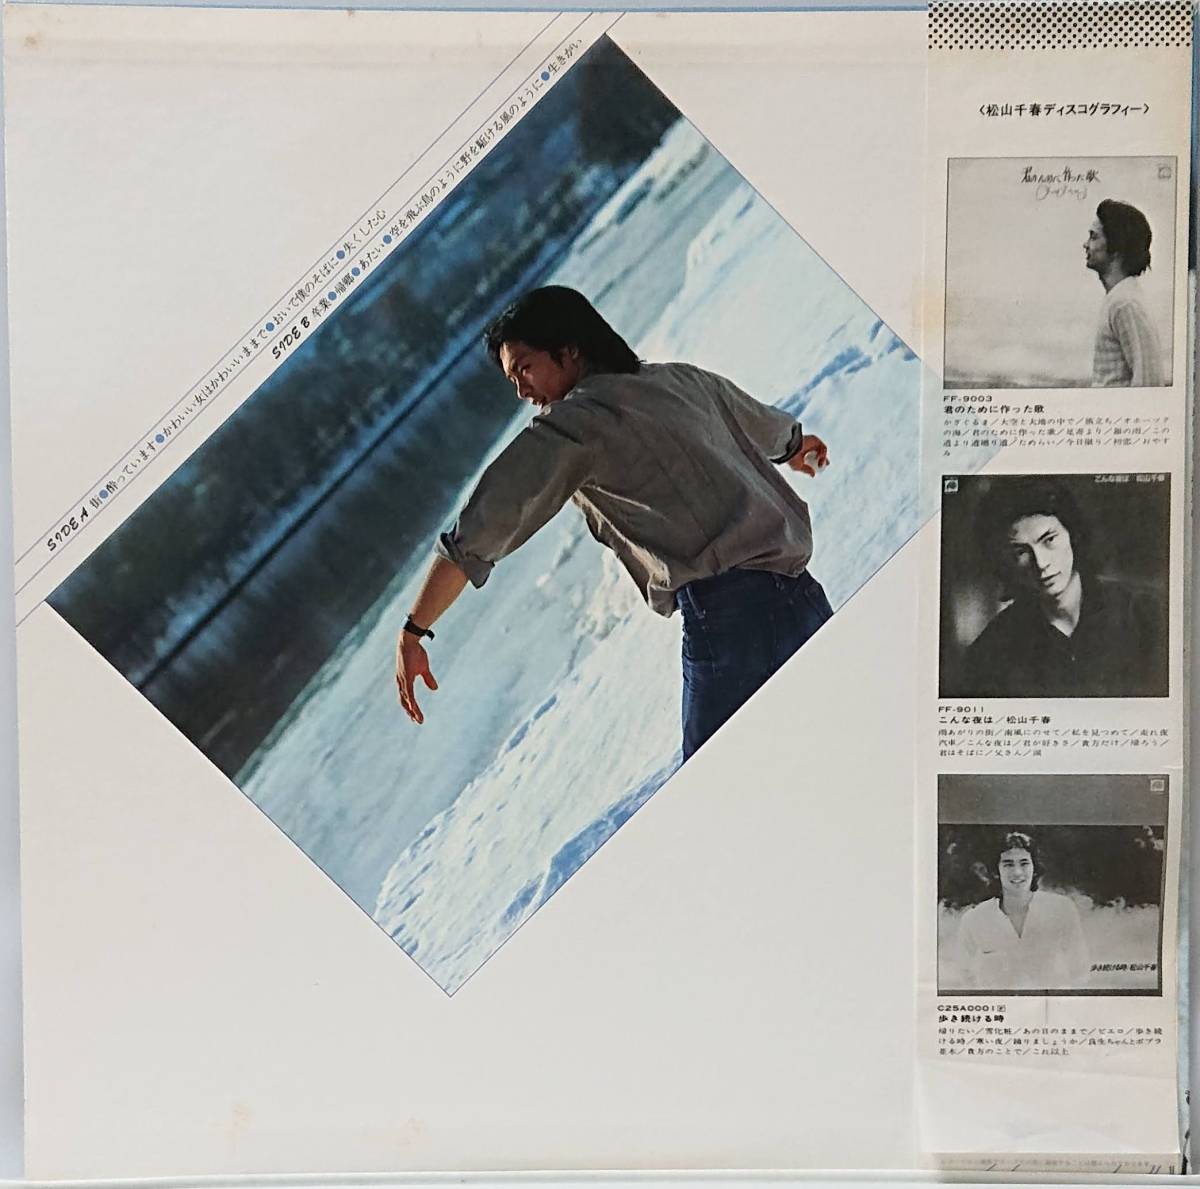 松山千春 : 空を飛ぶ鳥のように シール帯 国内盤 中古 アナログ LPレコード盤 1979年 C25A0040 M2-KDO-298_画像2